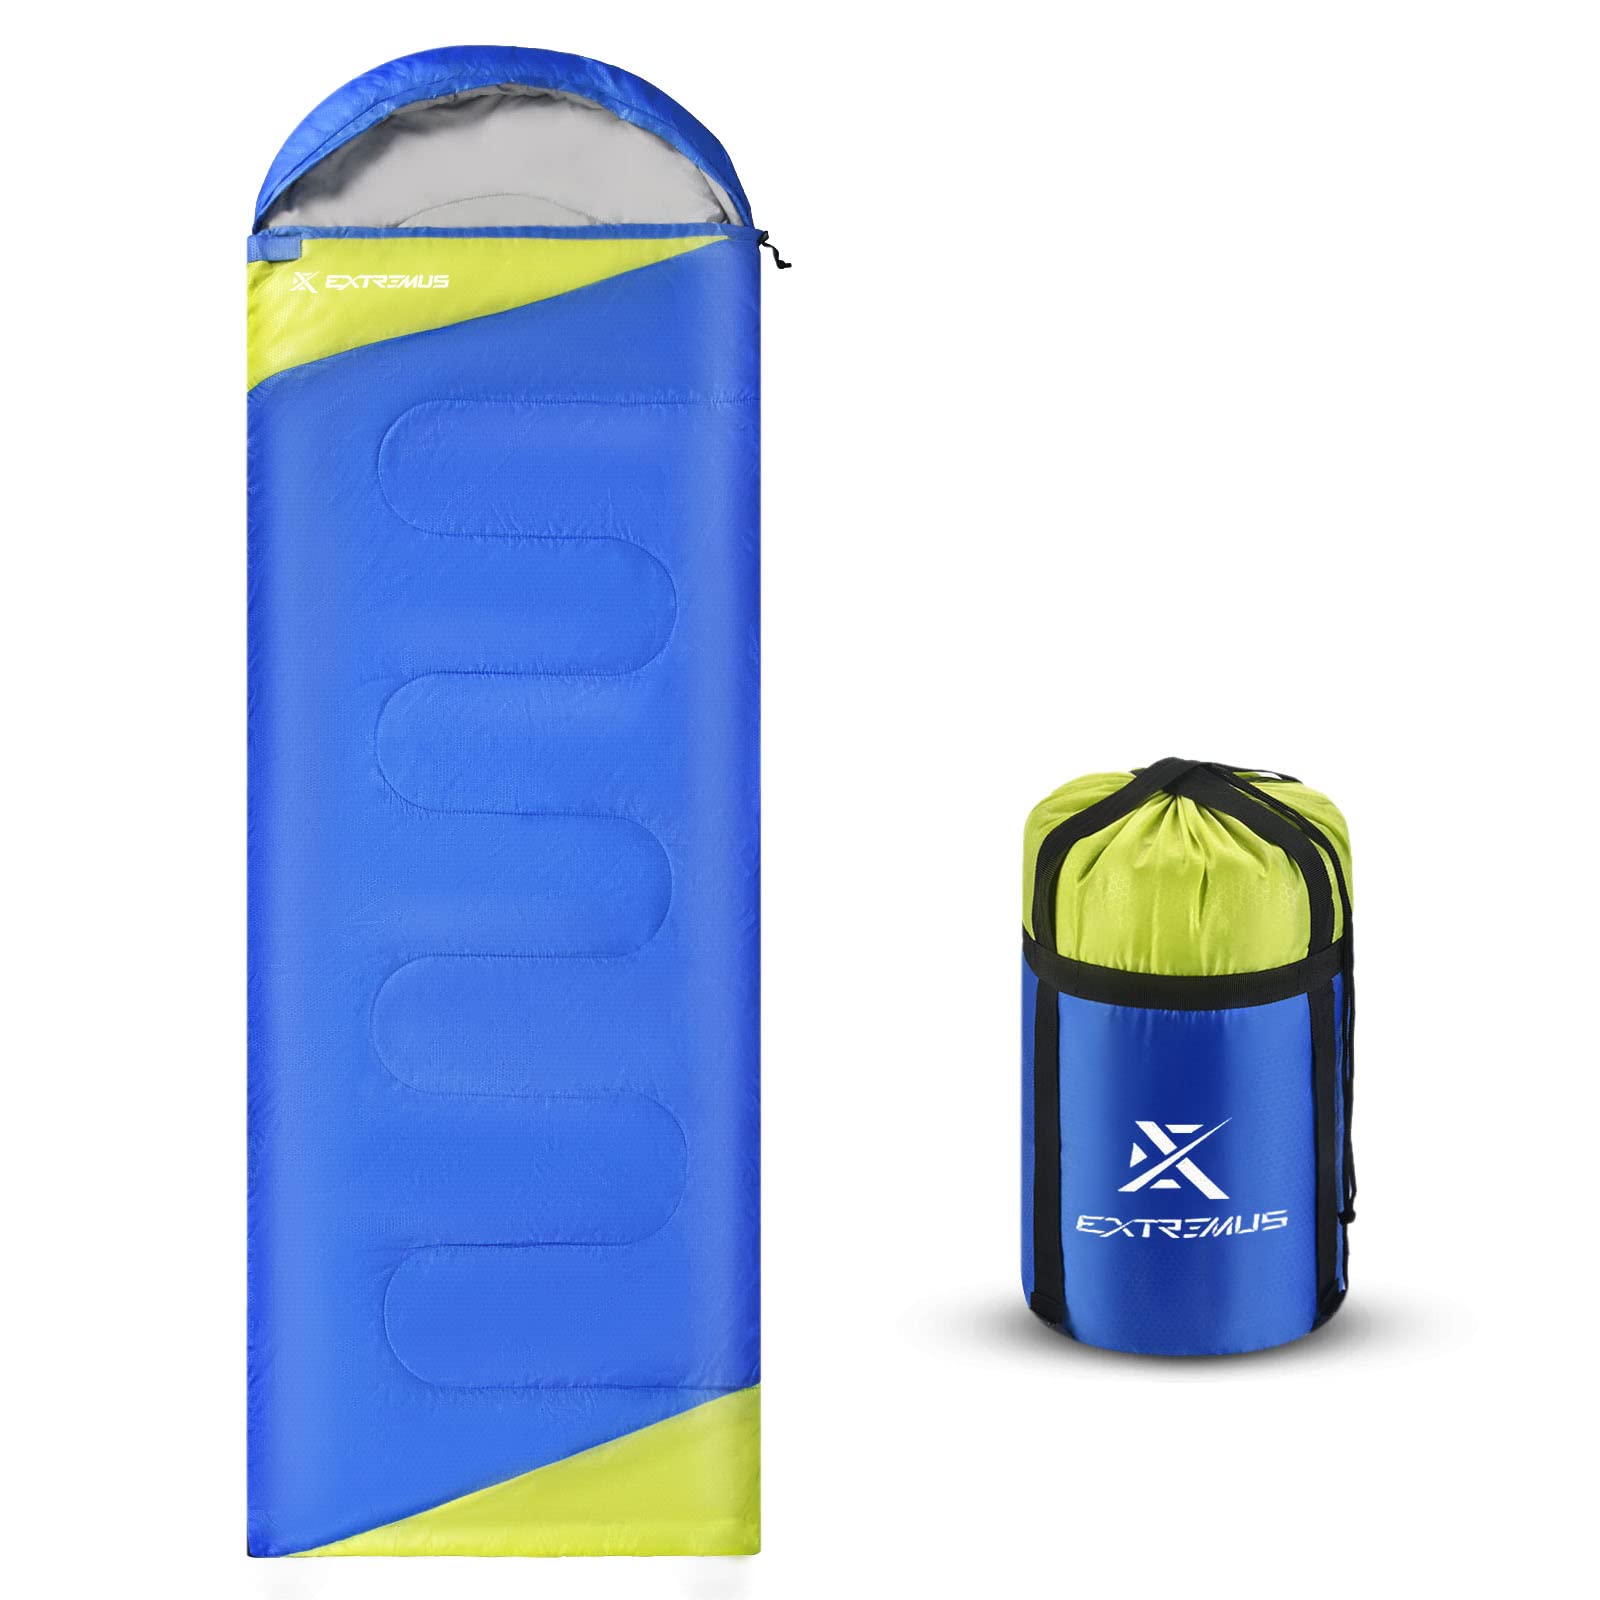 Extremus Rectangular Camping Sleeping Bag 3-Season Comfort Single